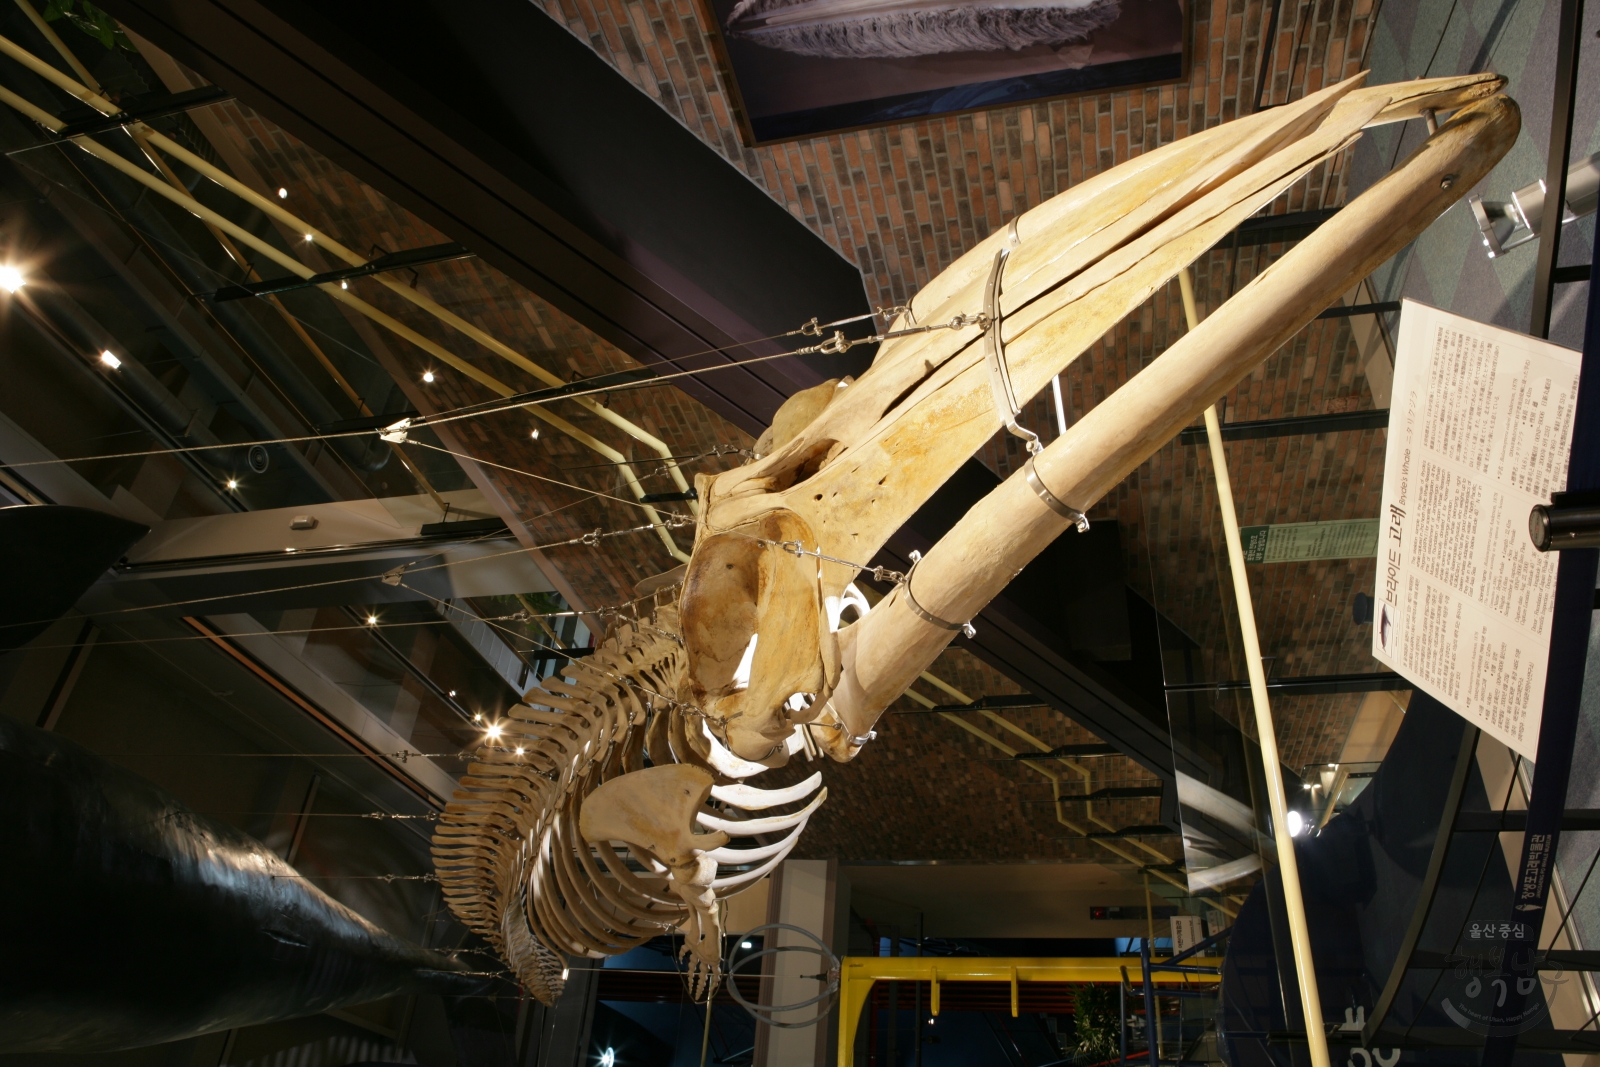 고래박물관 내부사진 의 사진